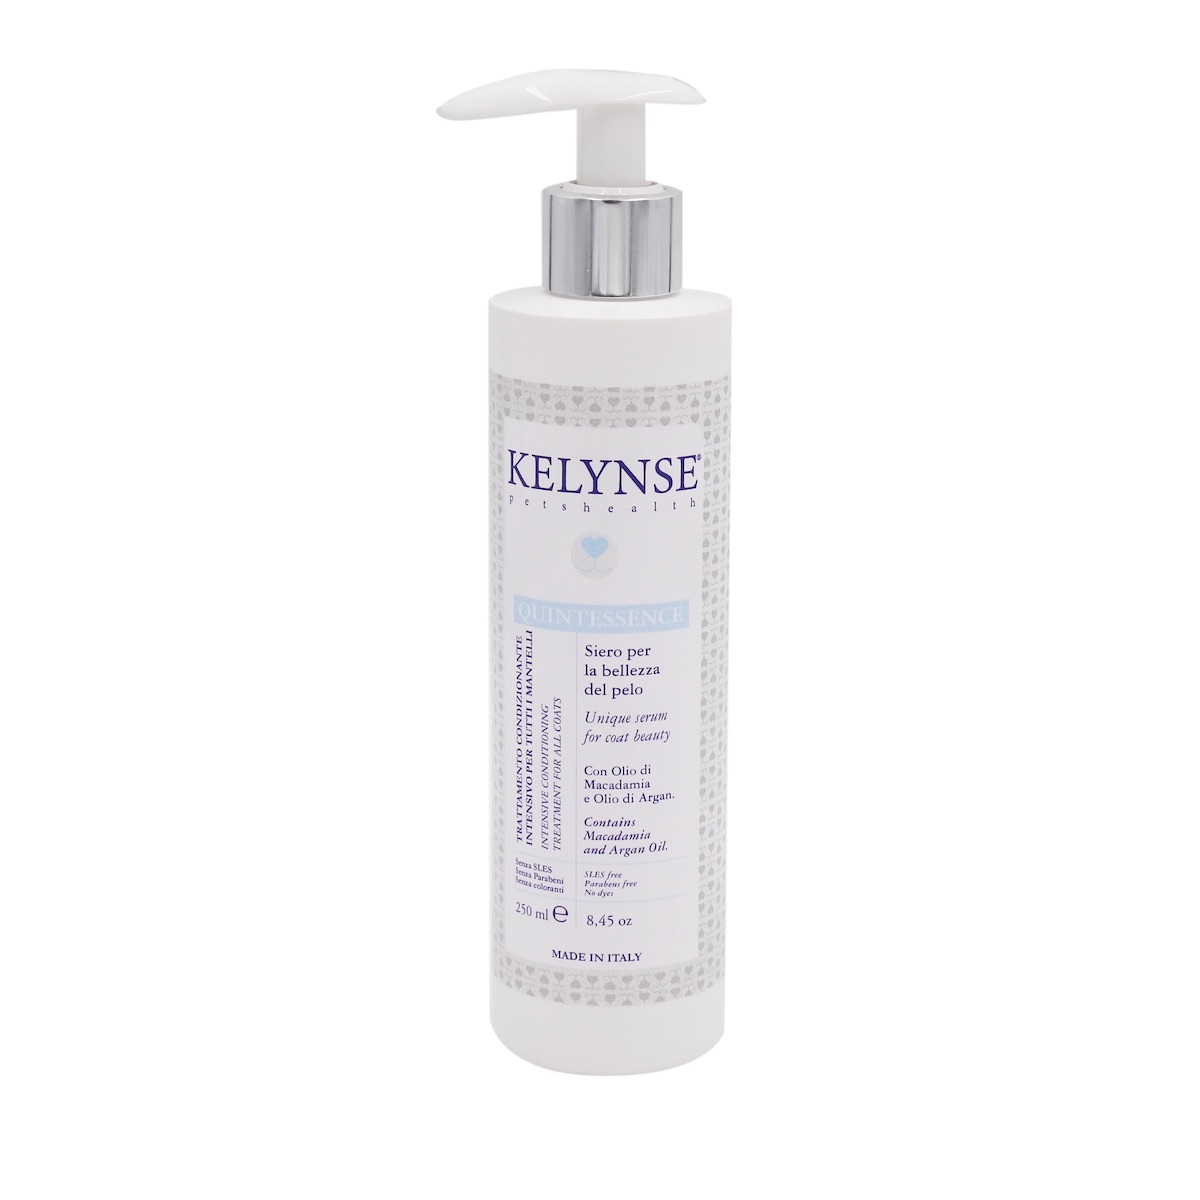 Kelynse Prodotti Cosmetici per Cani shampoo balsamo profumi prodotti per la cura del manto canino